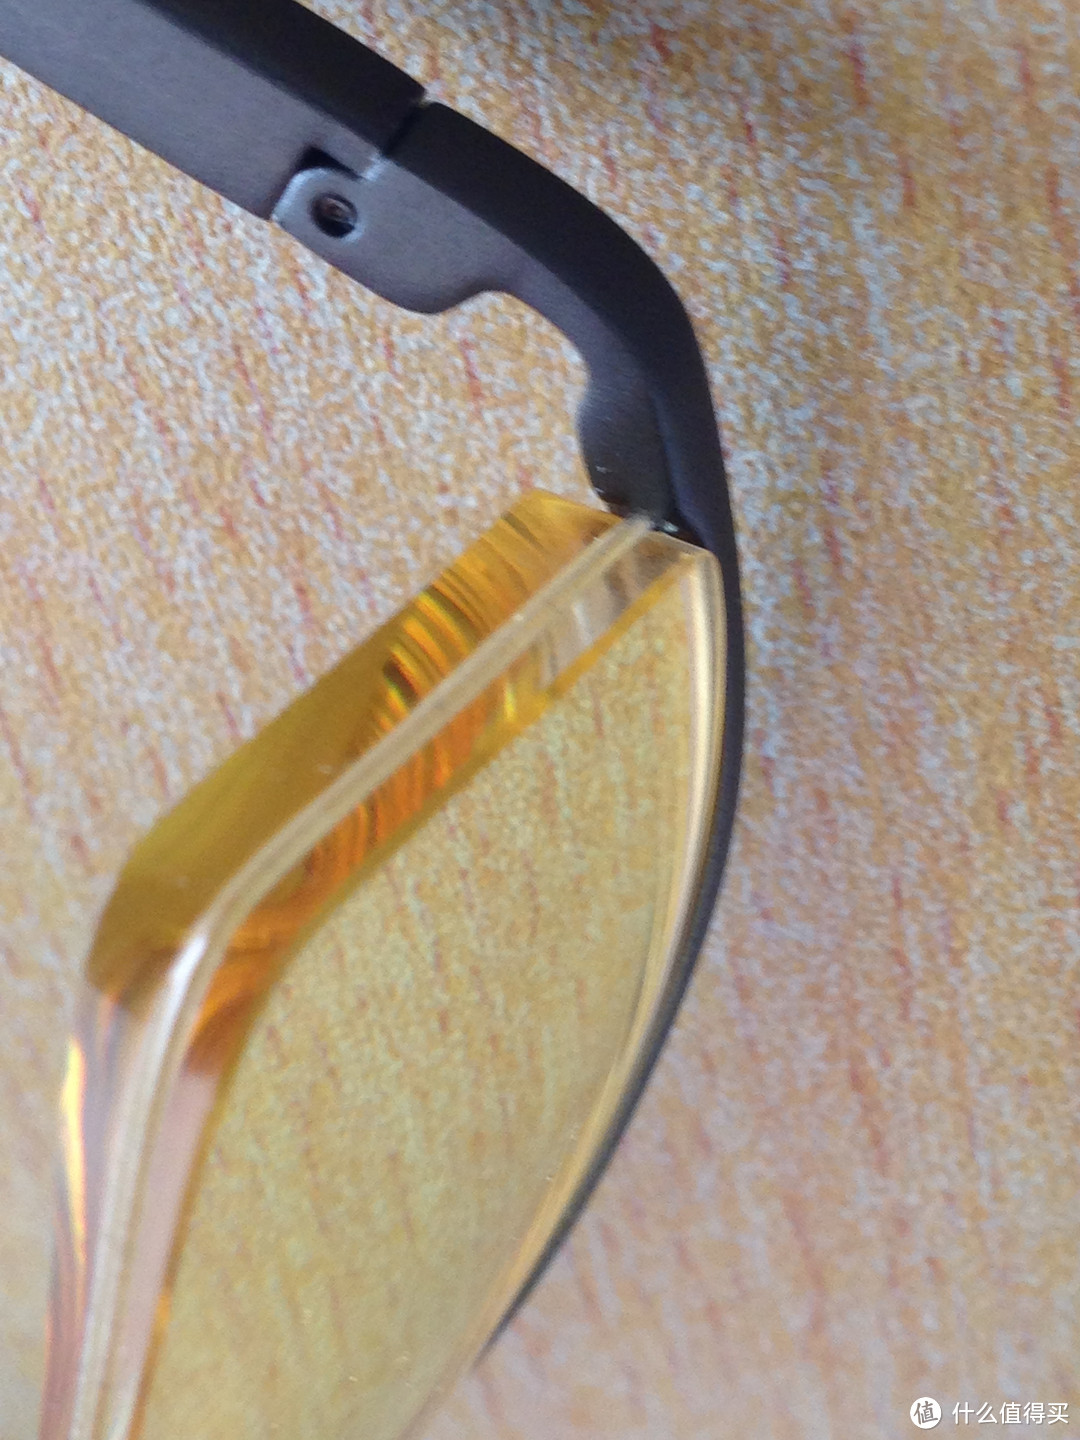 GUNNAR EMISSARY 官网定制 近视眼镜 购买、返修过程